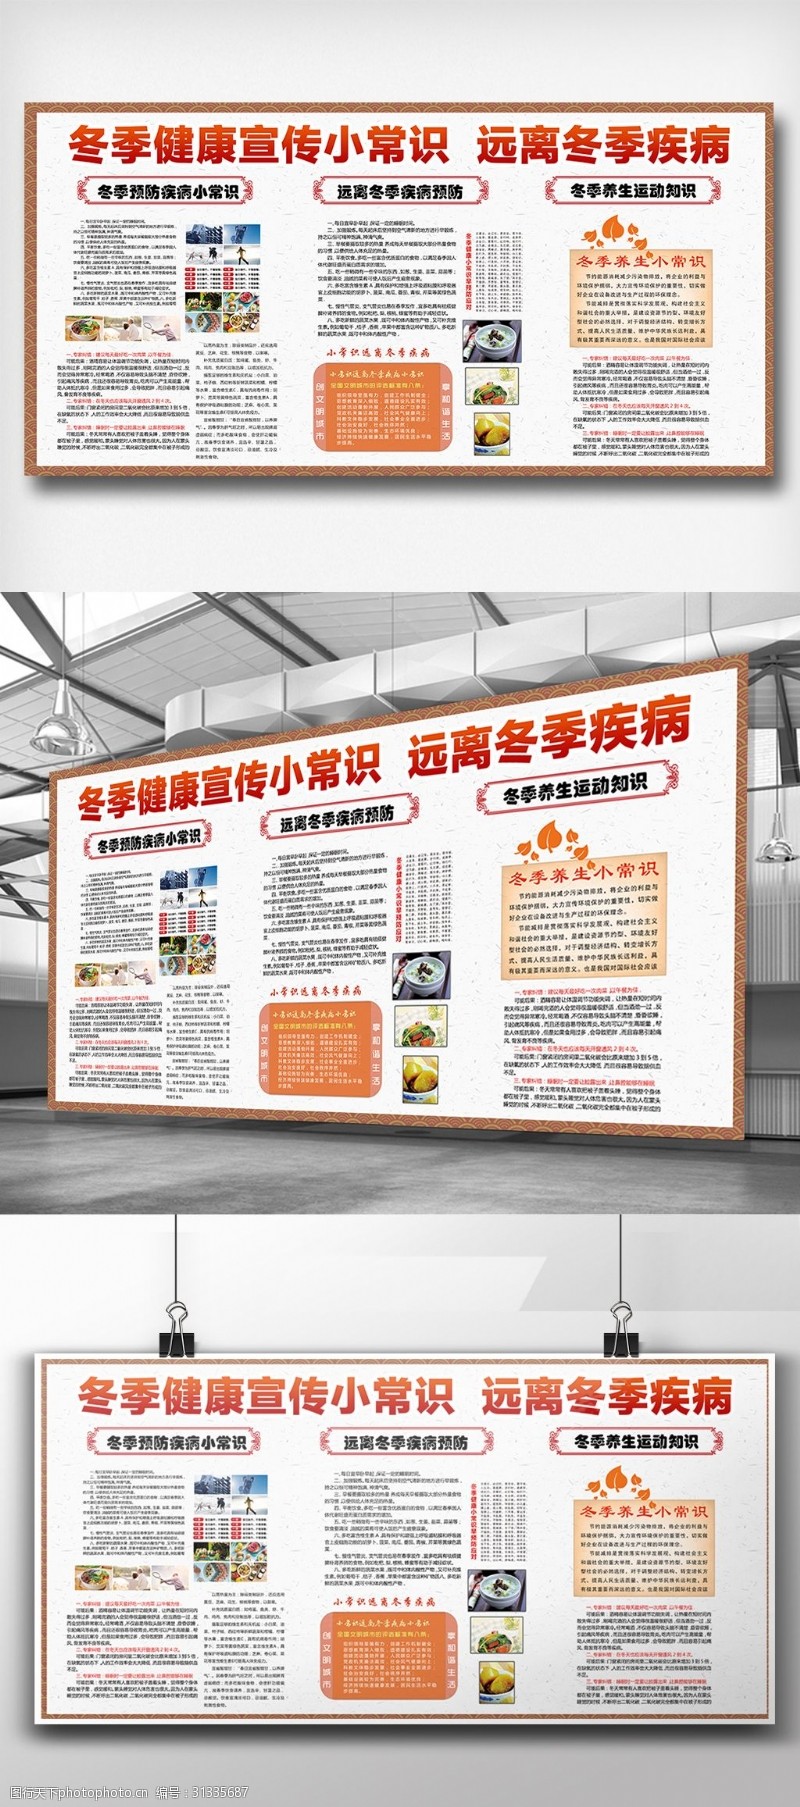 预防知识中国风创意冬季疾病预防小知识宣传栏